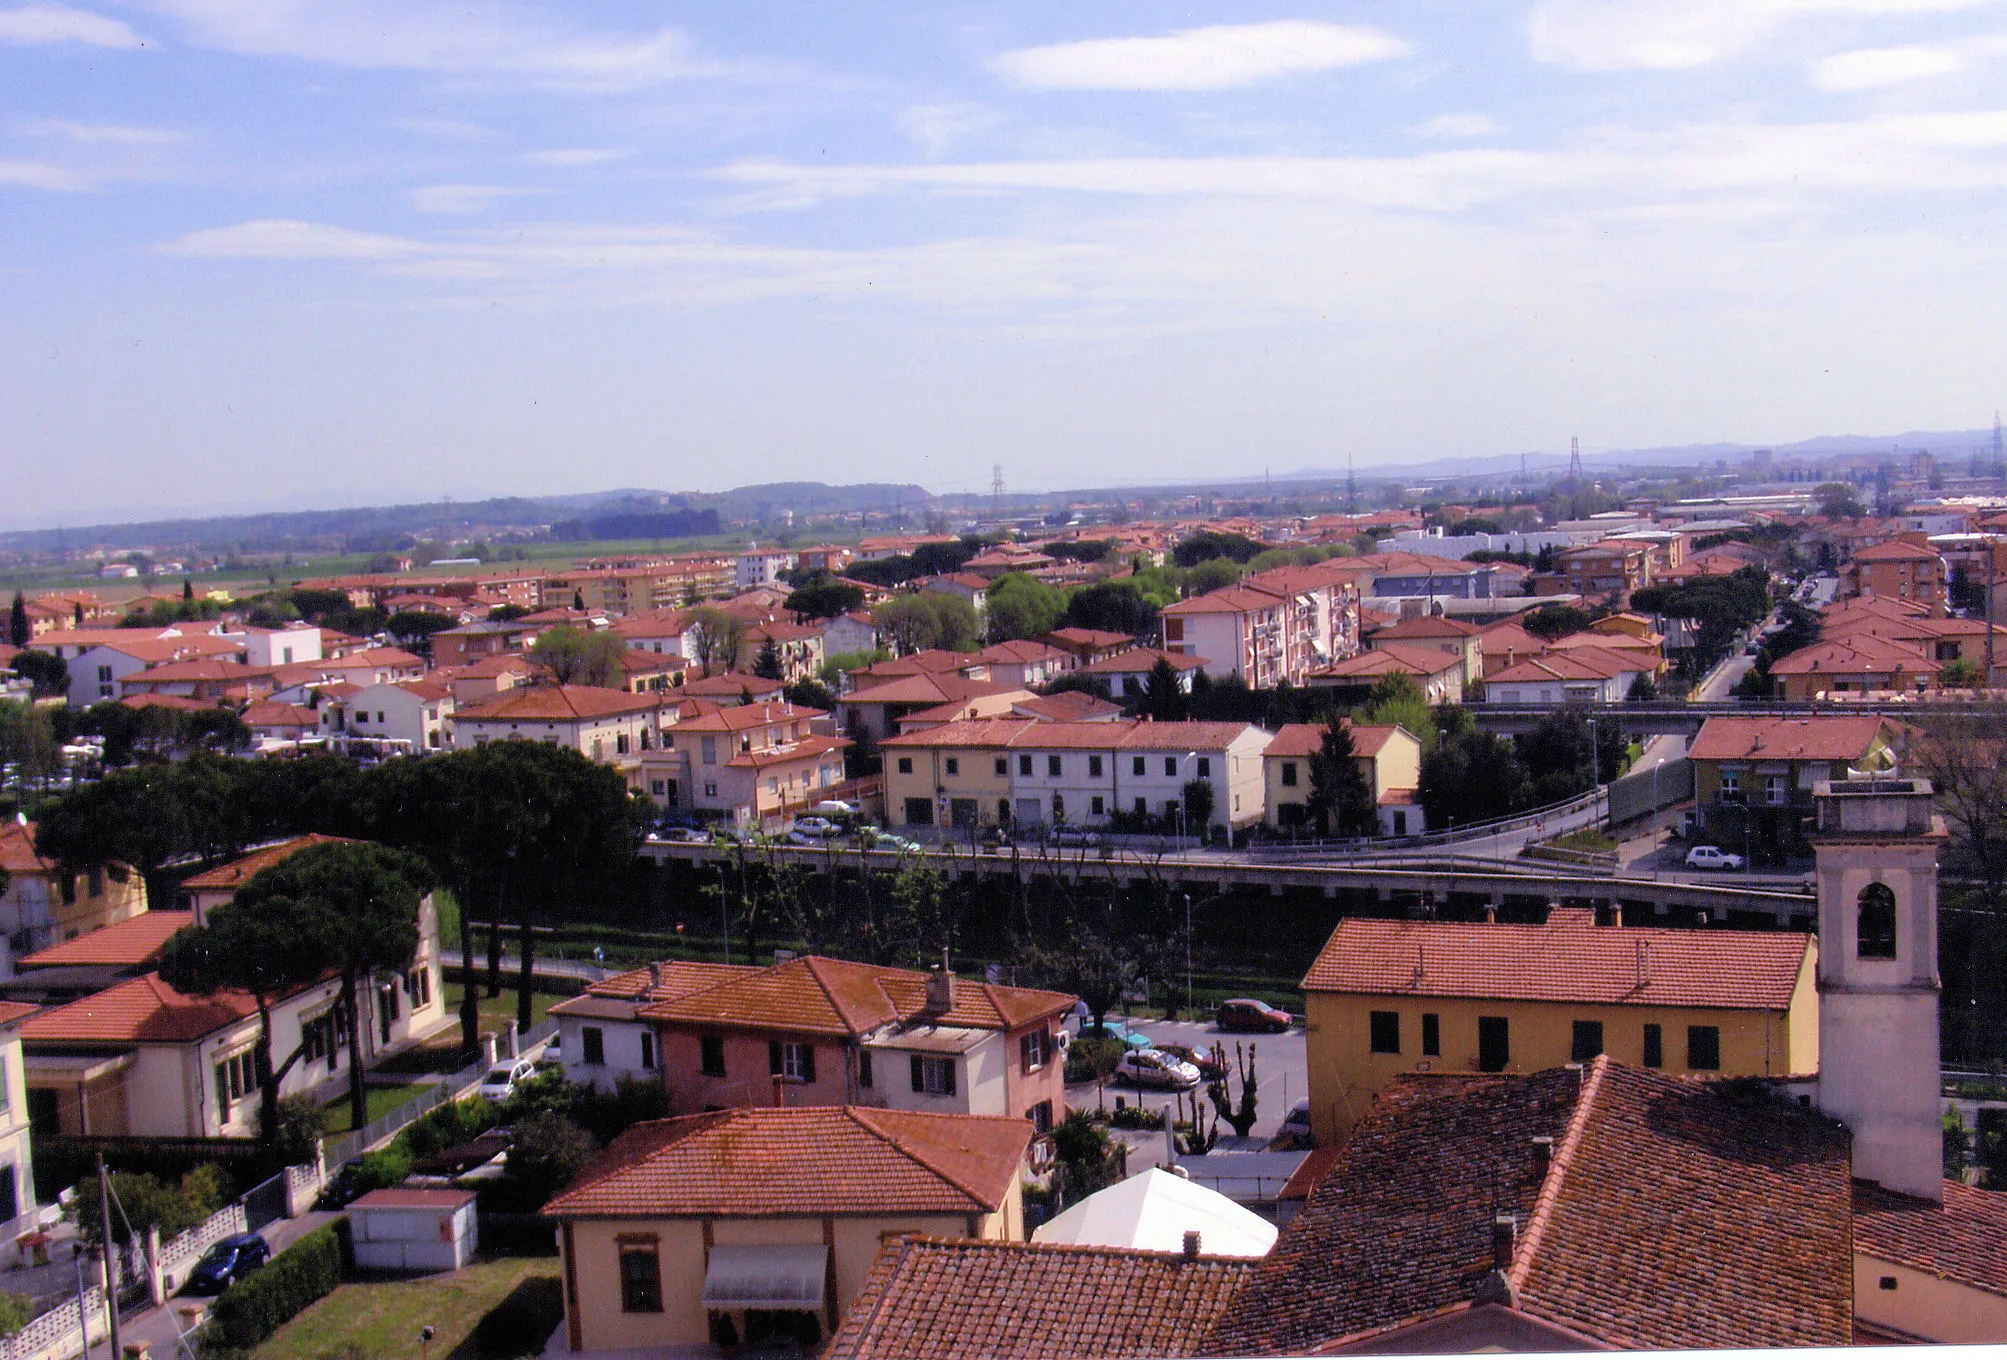 Obrázok Toscana